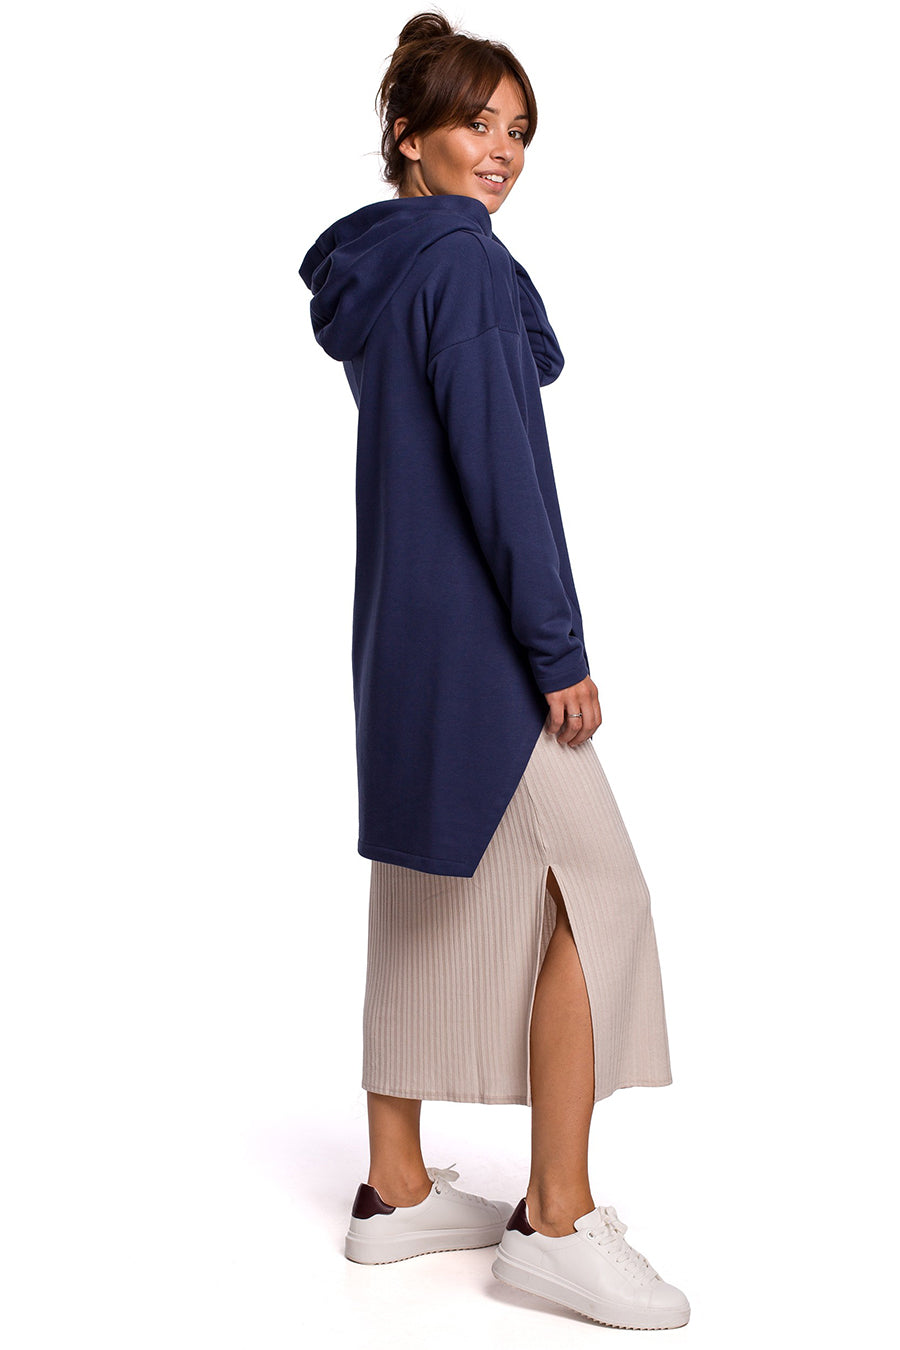 Γυναικείο φούτερ με κουκούλα Ayla, Ναυτικό μπλε 2